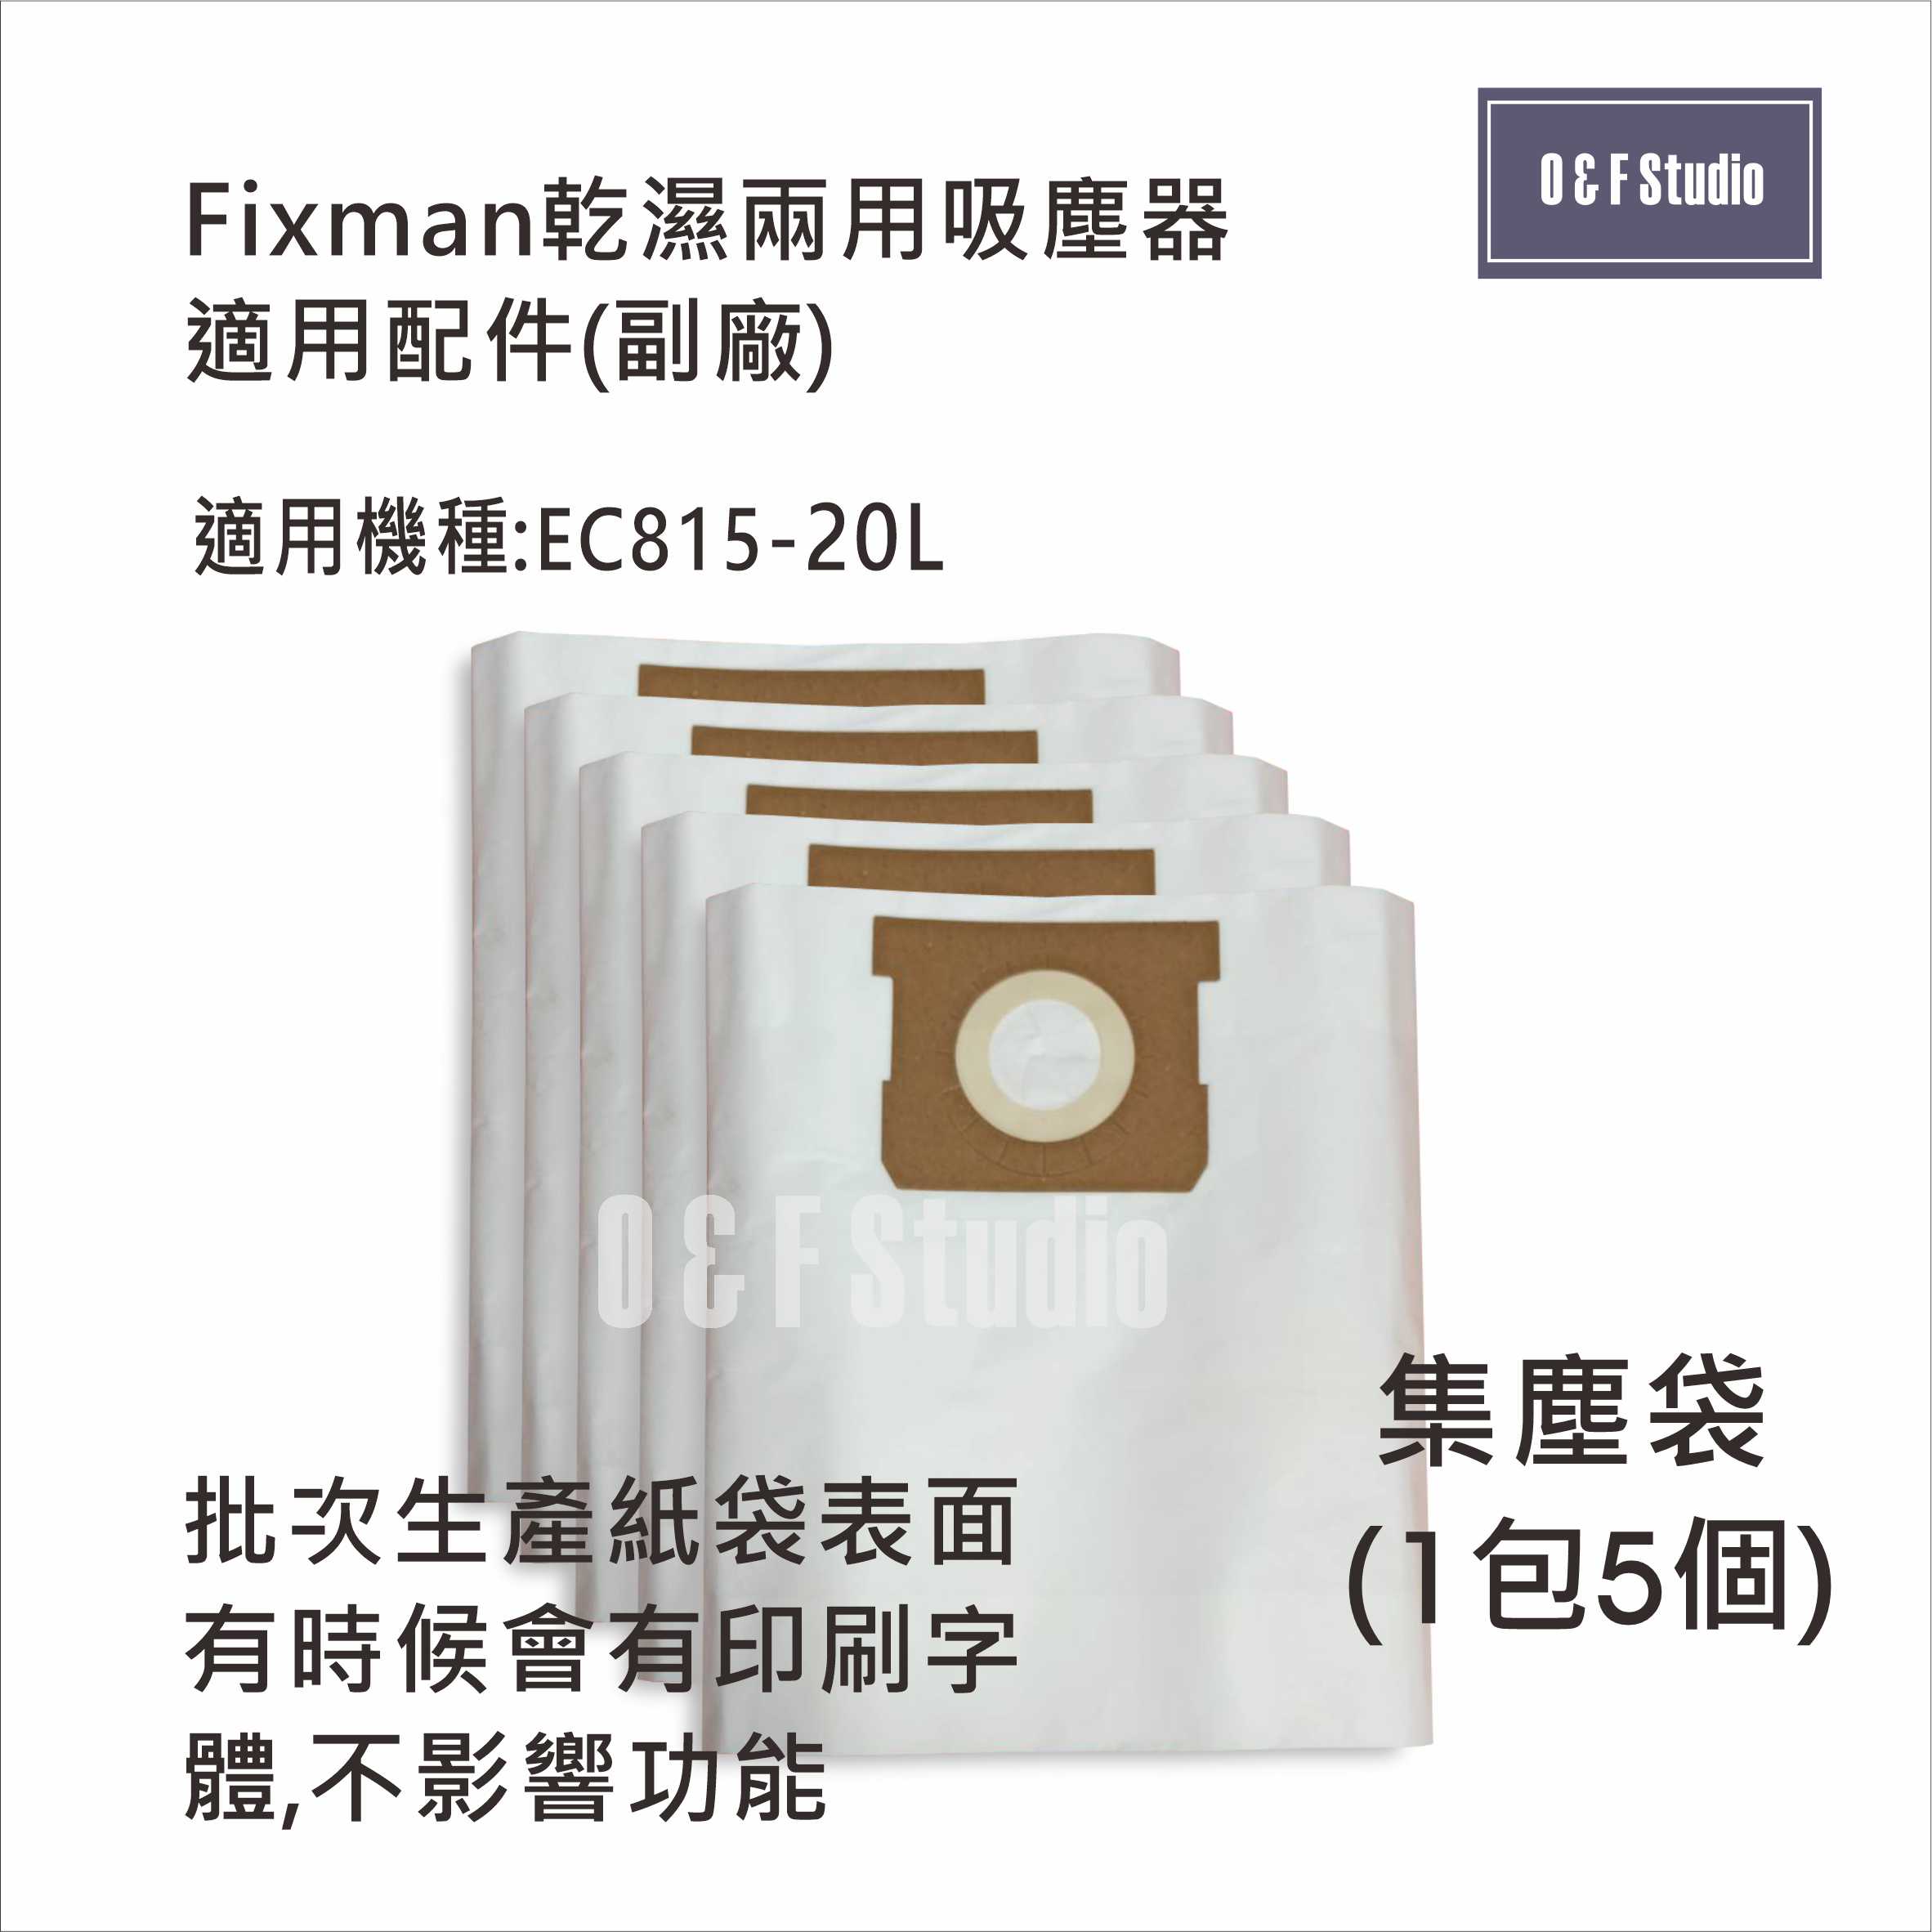 吸塵器集塵袋 Fixman乾濕兩用吸塵器 EC815-20L 適用 1包5個 台灣現貨 副廠 【居家達人13C05】